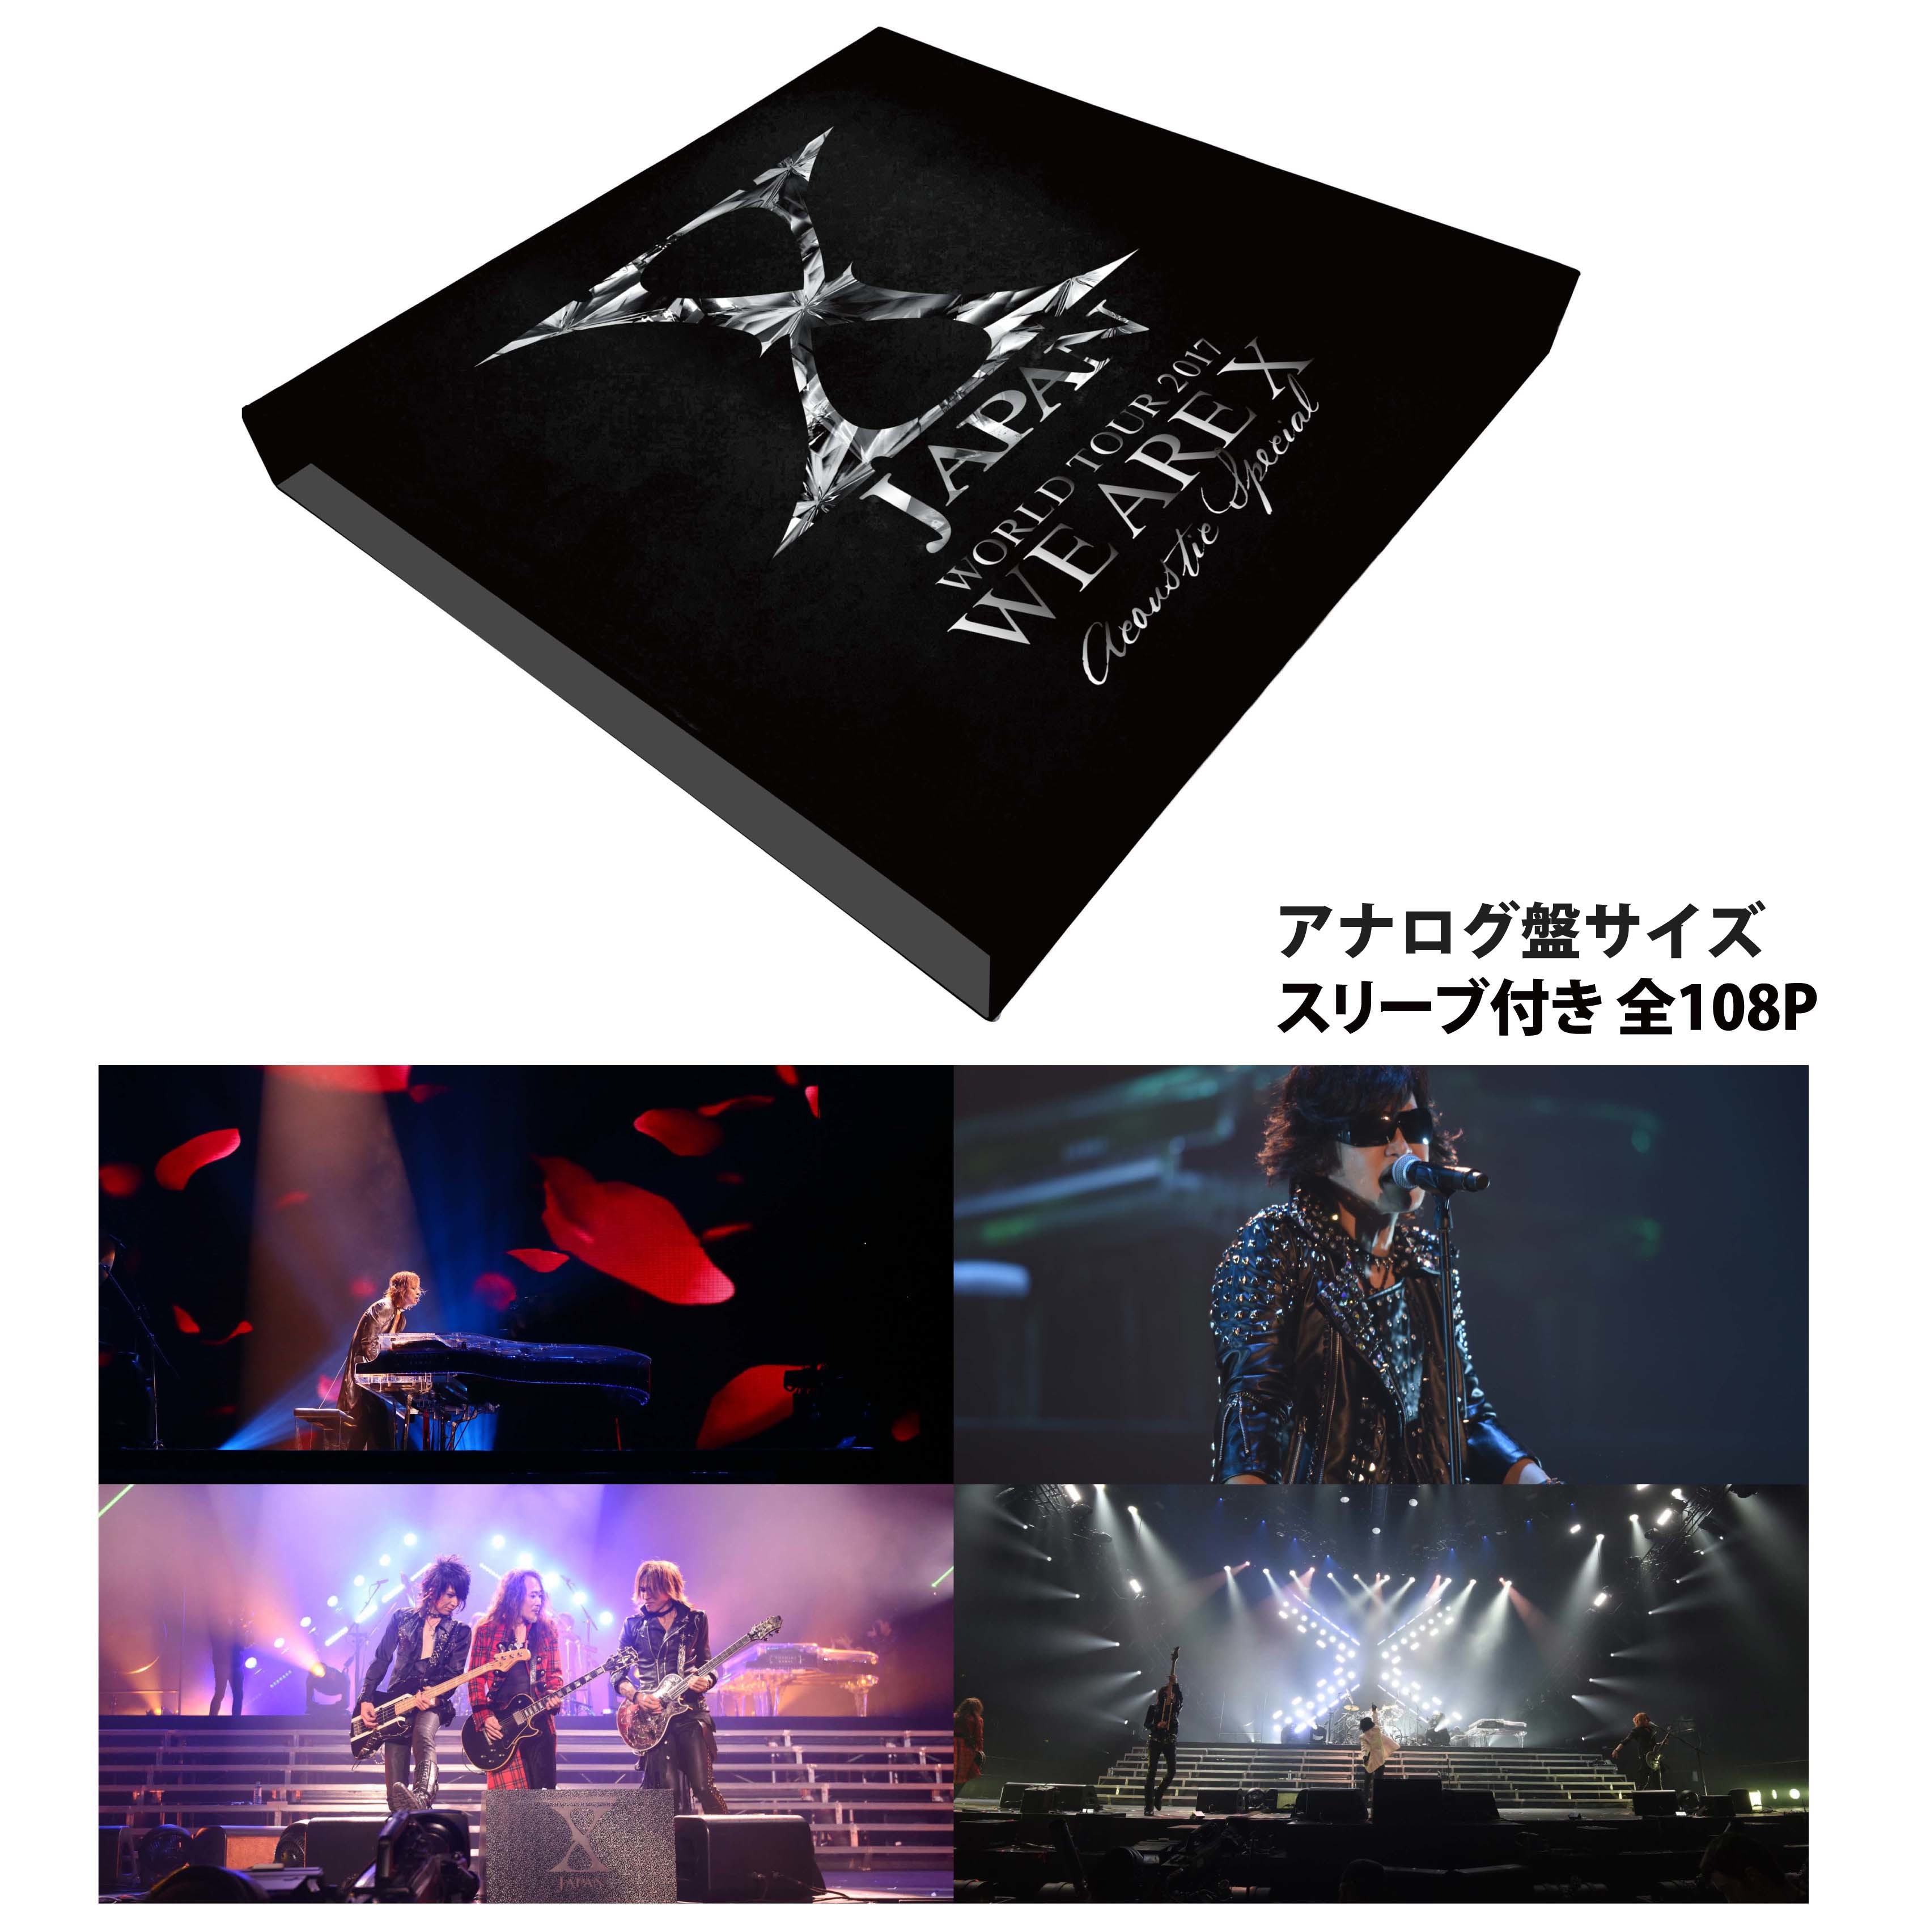 X JAPAN、ドラムスティック型ライトなど全28種類の公式ツアー